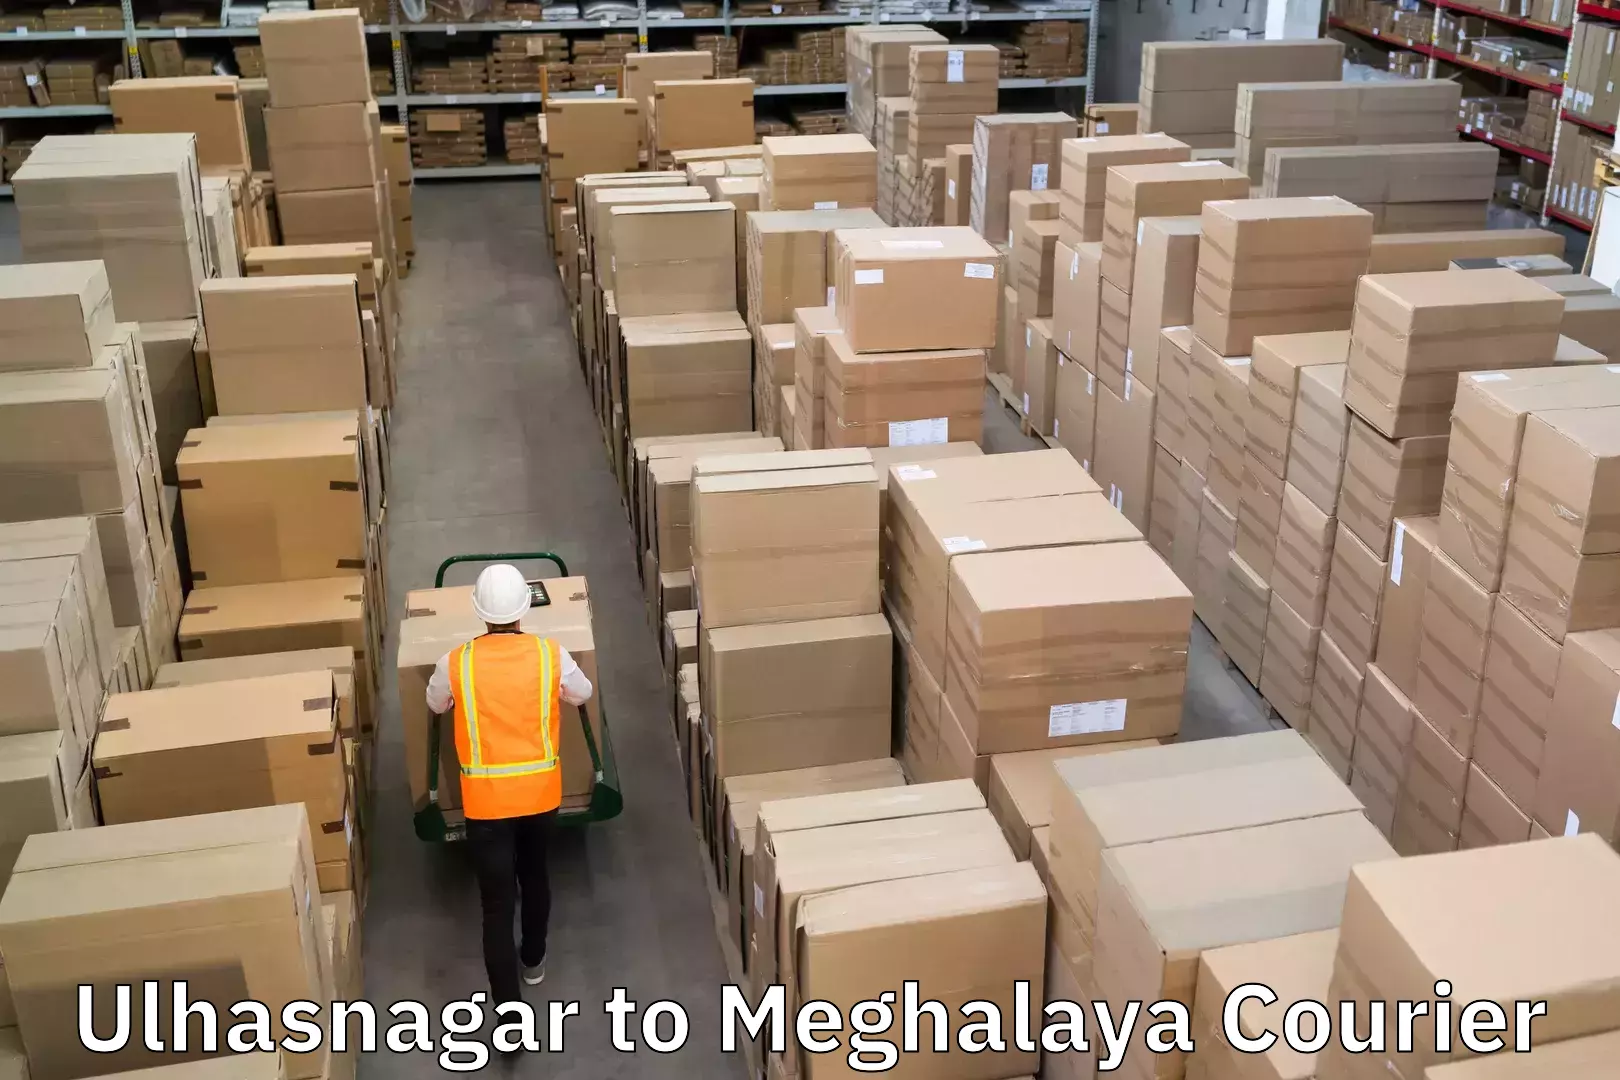 Express courier facilities Ulhasnagar to Meghalaya